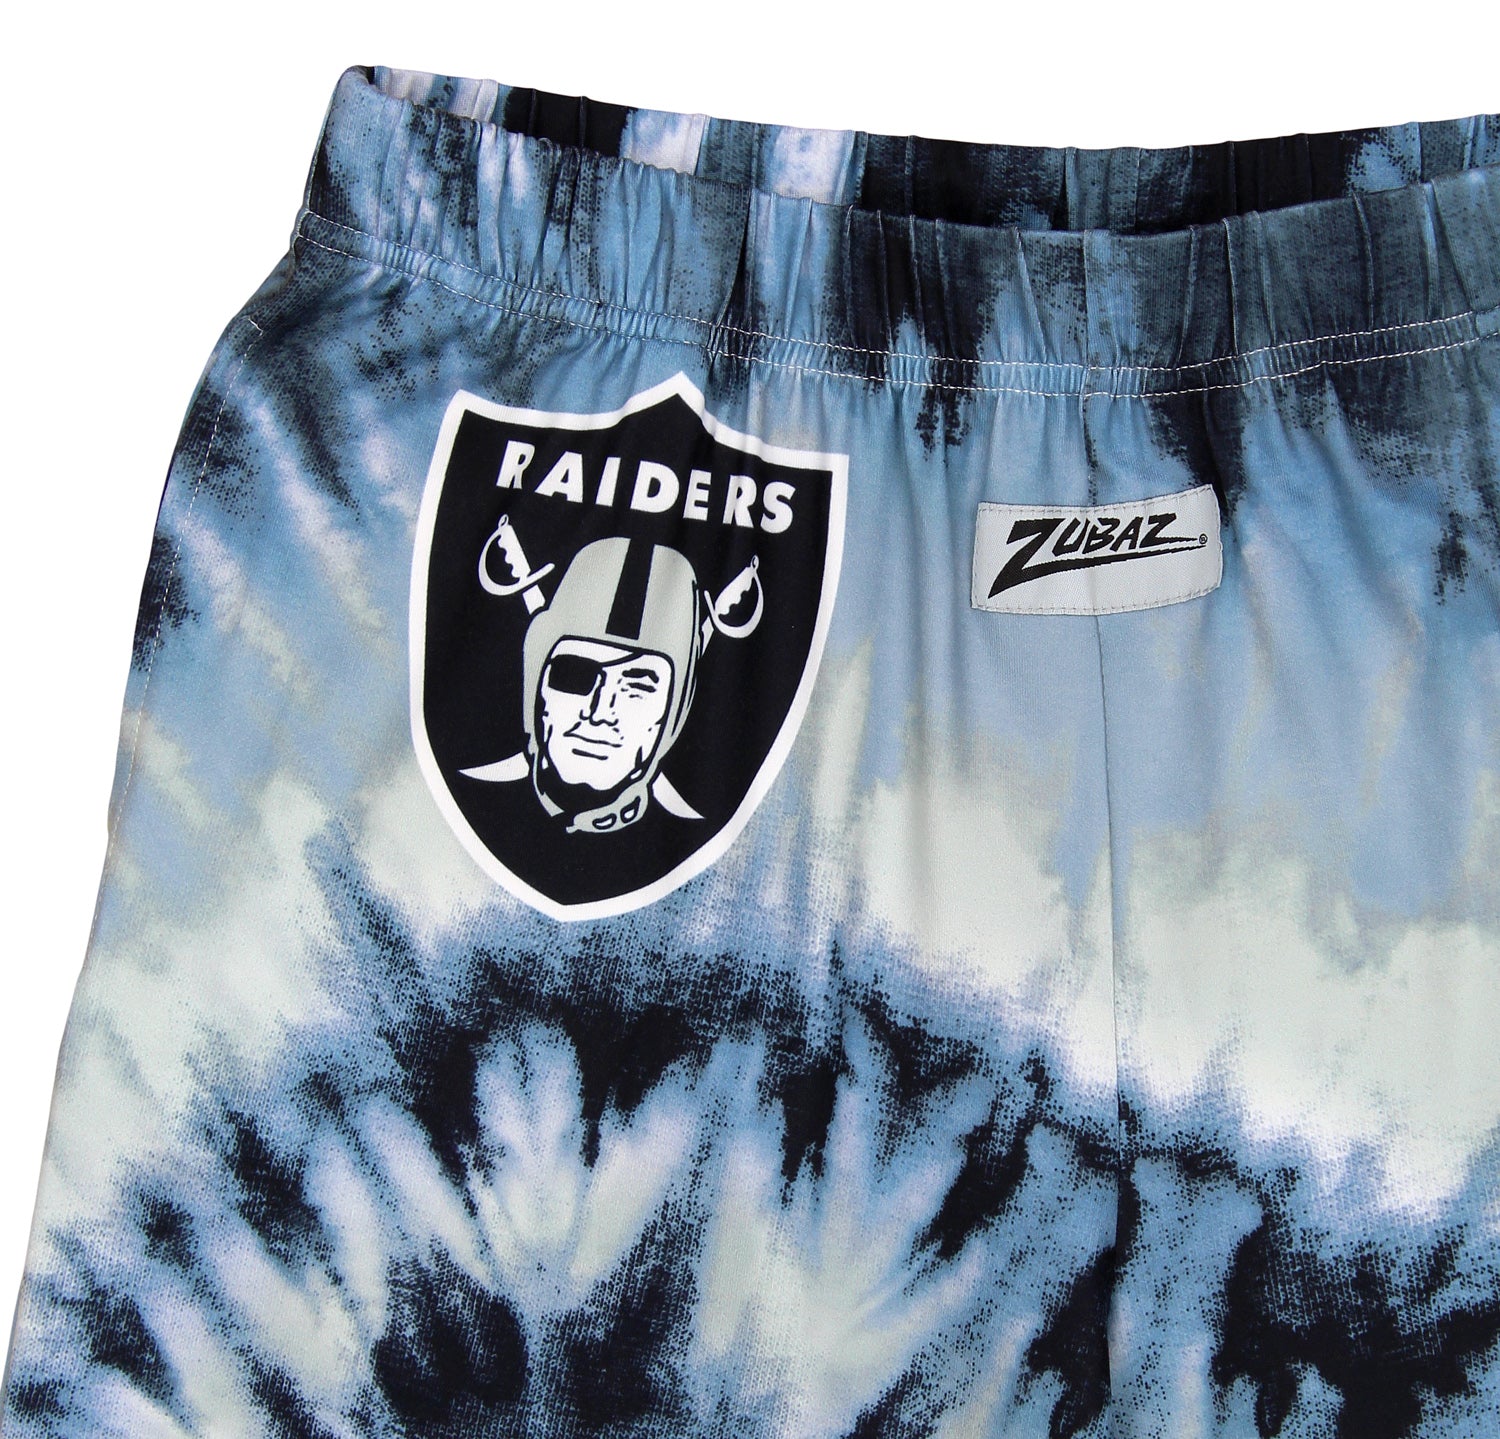 Zubaz Las Vegas Raiders NFL Men's Tie Dye Team Colors Lounge Pants, Black